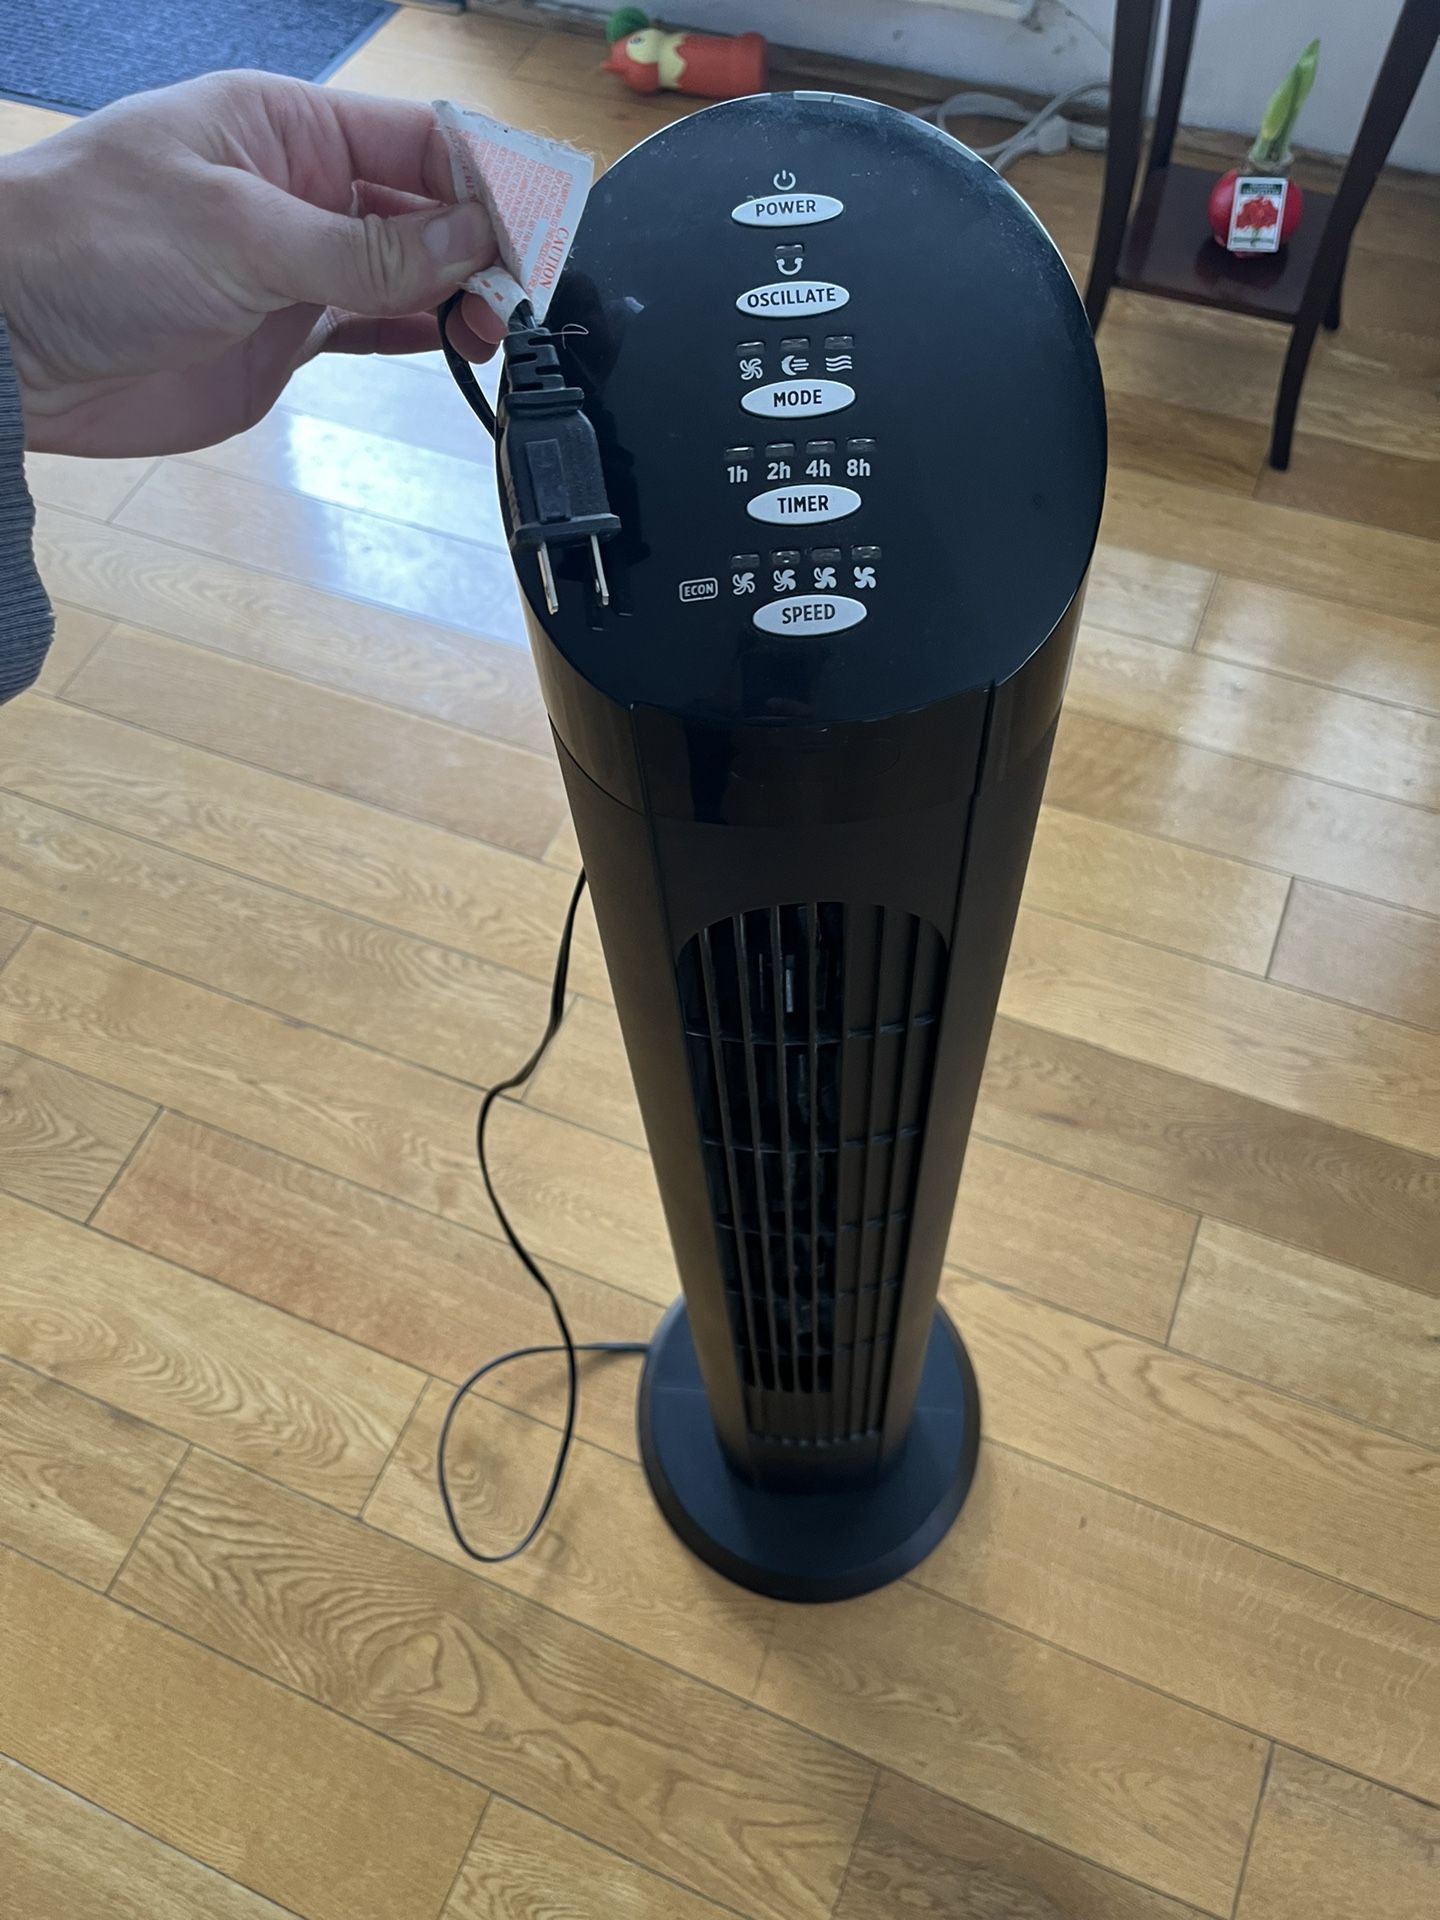 Oscillating Standing Fan (4 Feet)